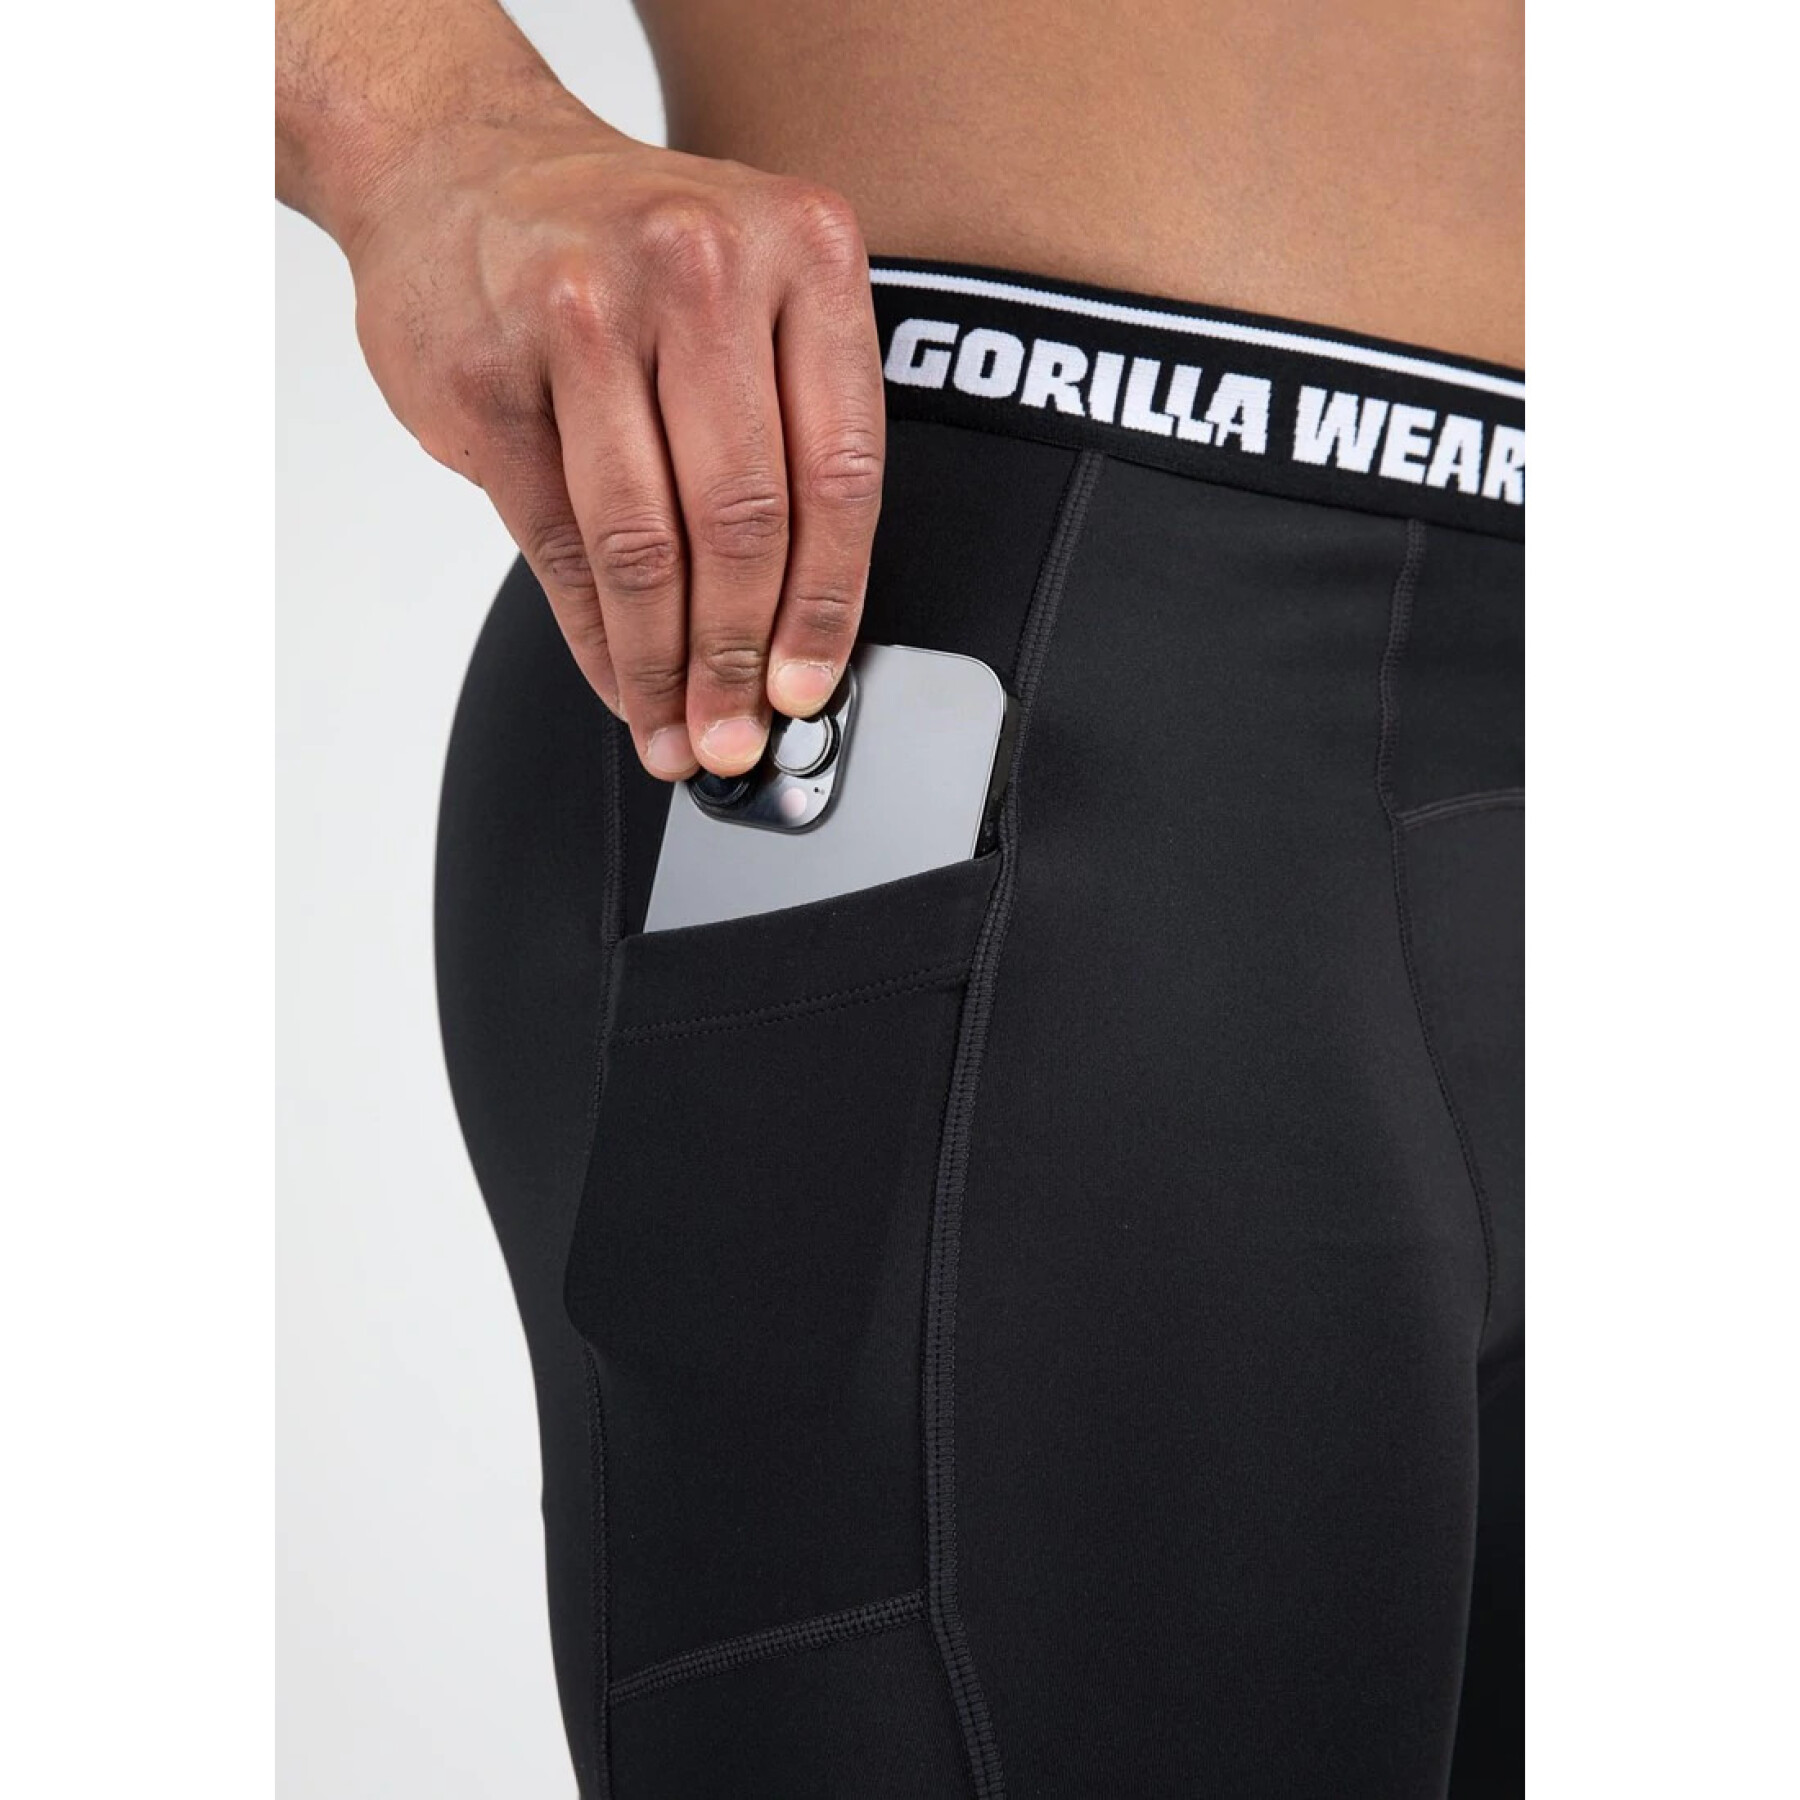 Pantalón corto de compresión Gorilla Wear Philadelphia